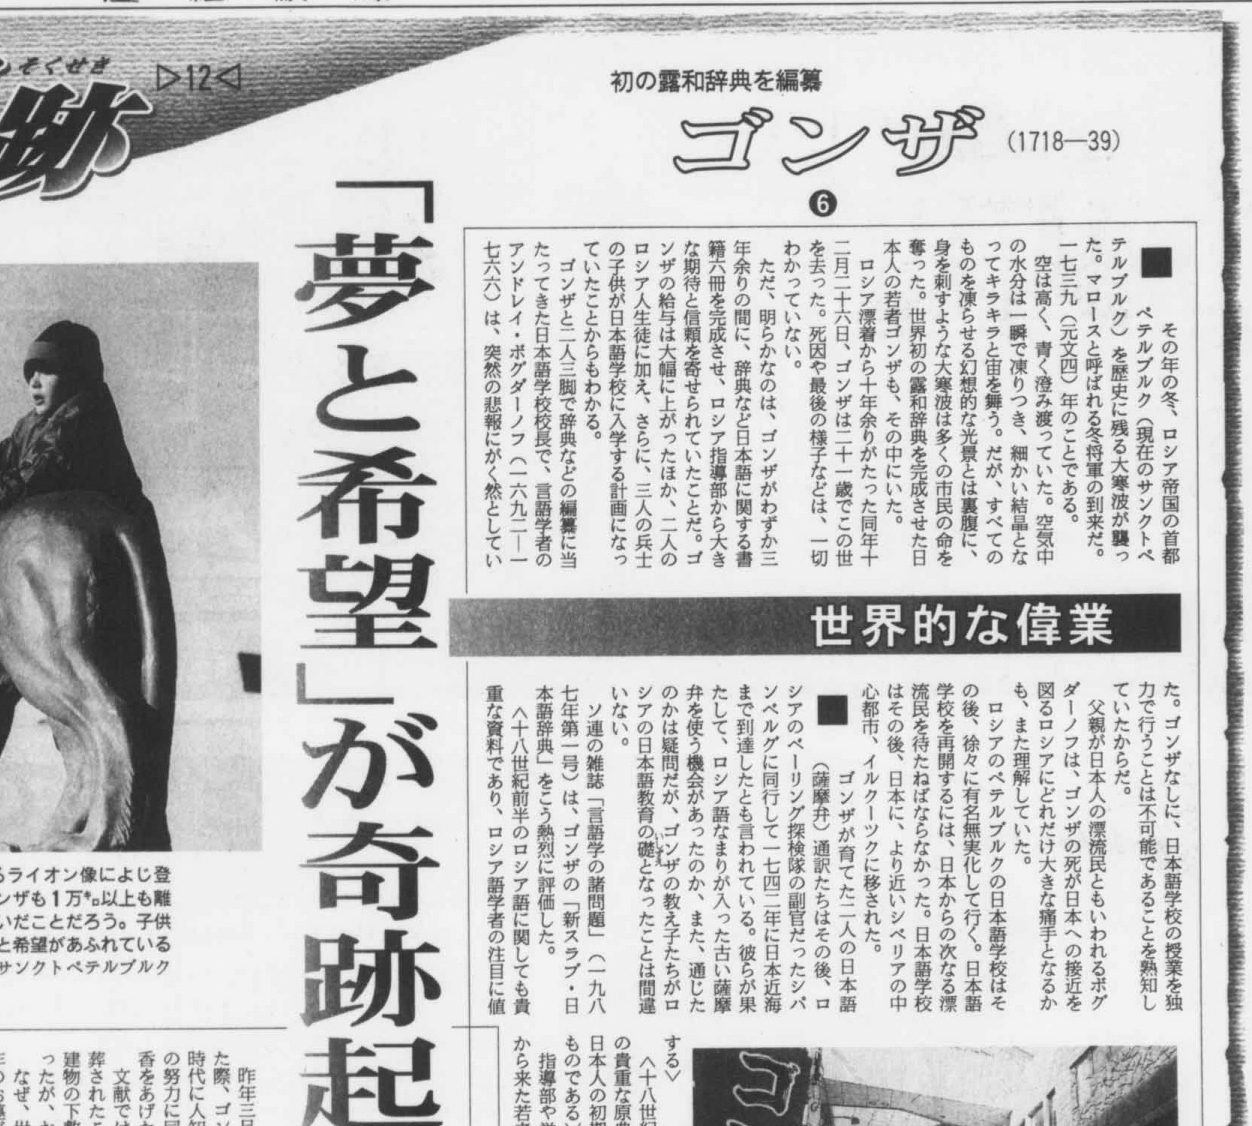 【日本人の足跡】日本語教育の礎を残す ロシアで起こしたゴンザの奇跡 - 産経ニュース